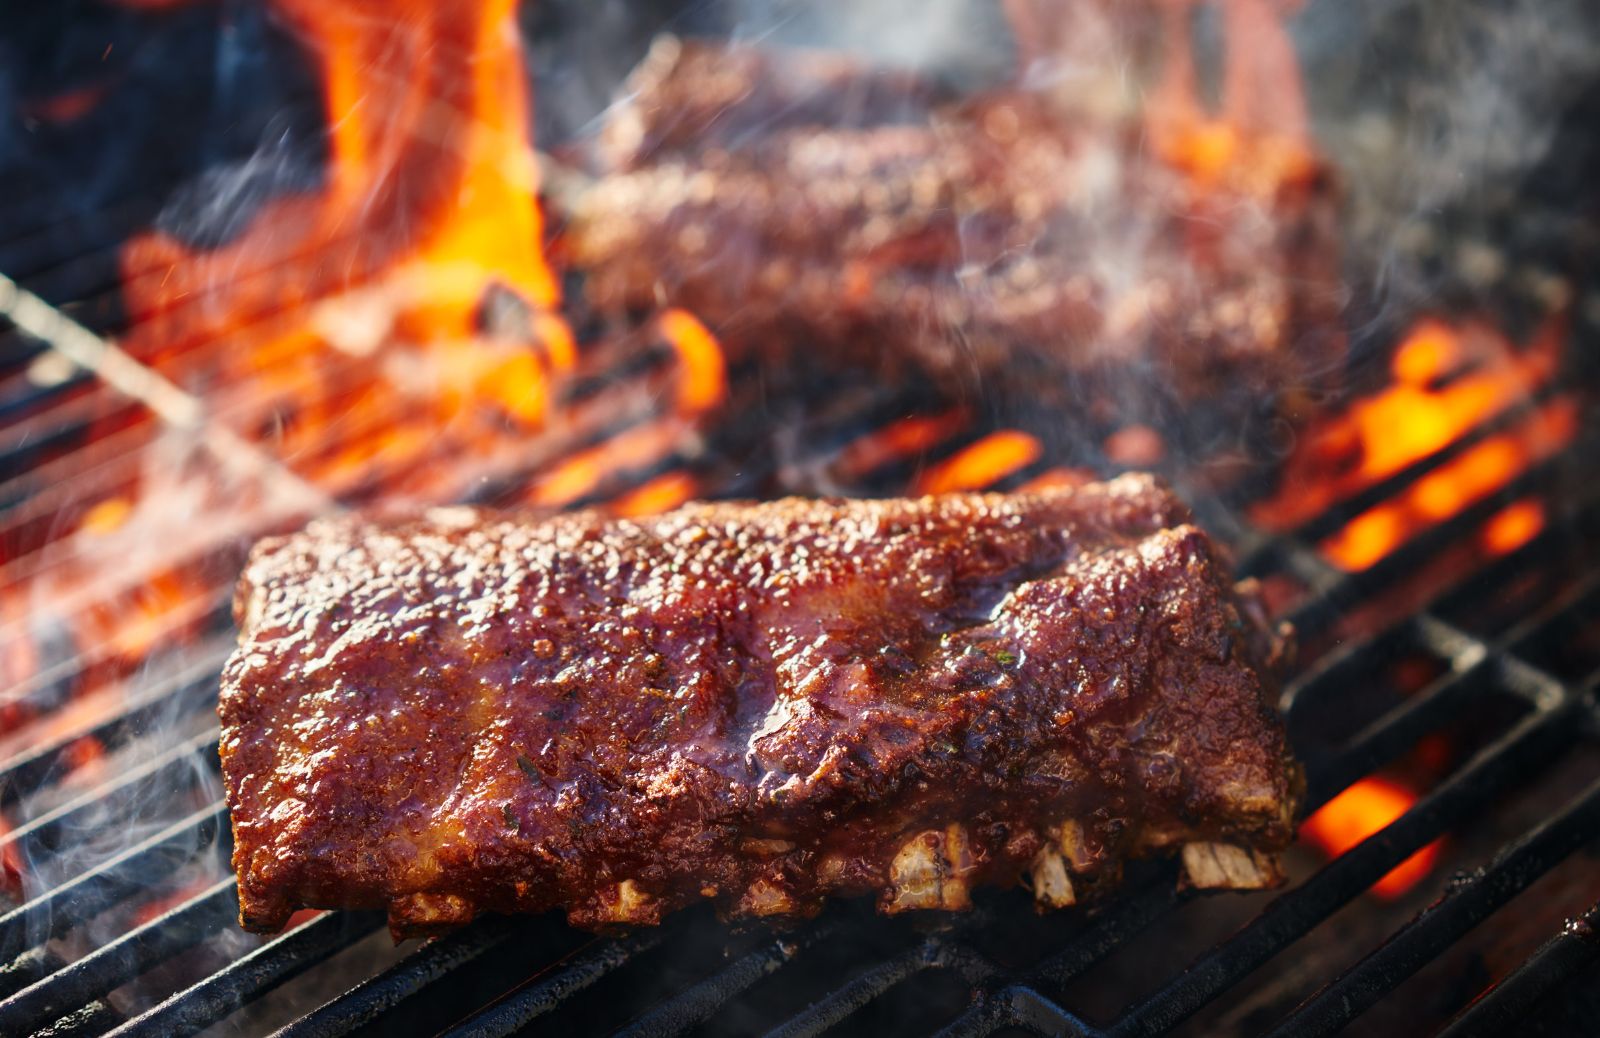 Barbecue fai da te: 5 idee semplici, economiche e originali